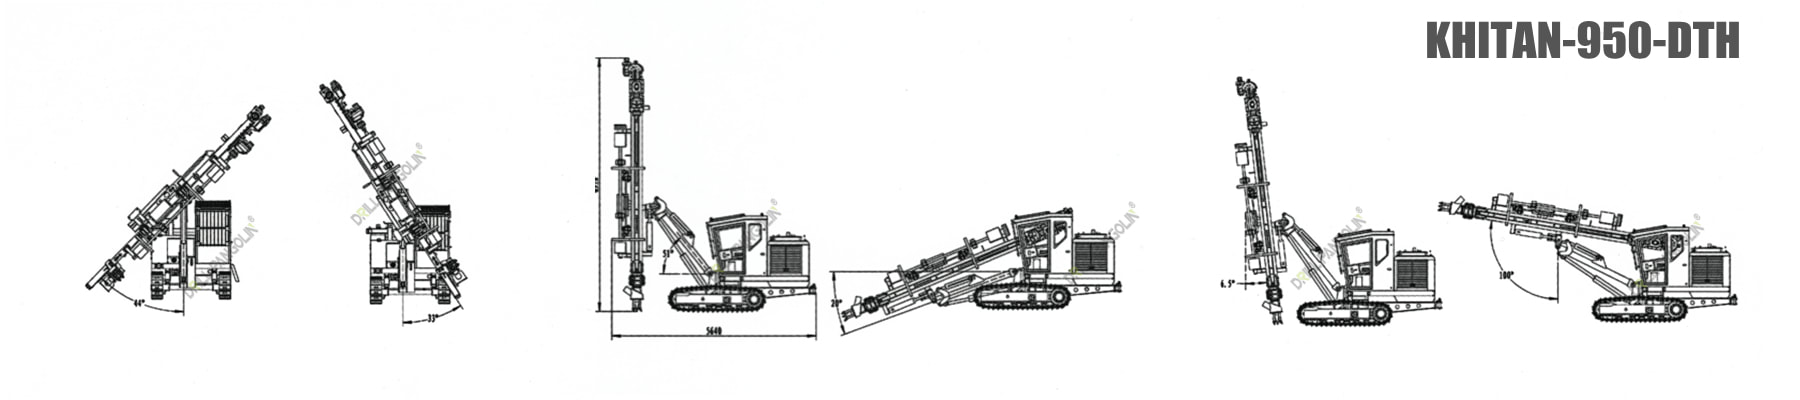 dimension-khitan 950 dth hydraulic crawler drilling rig-drillpangolin